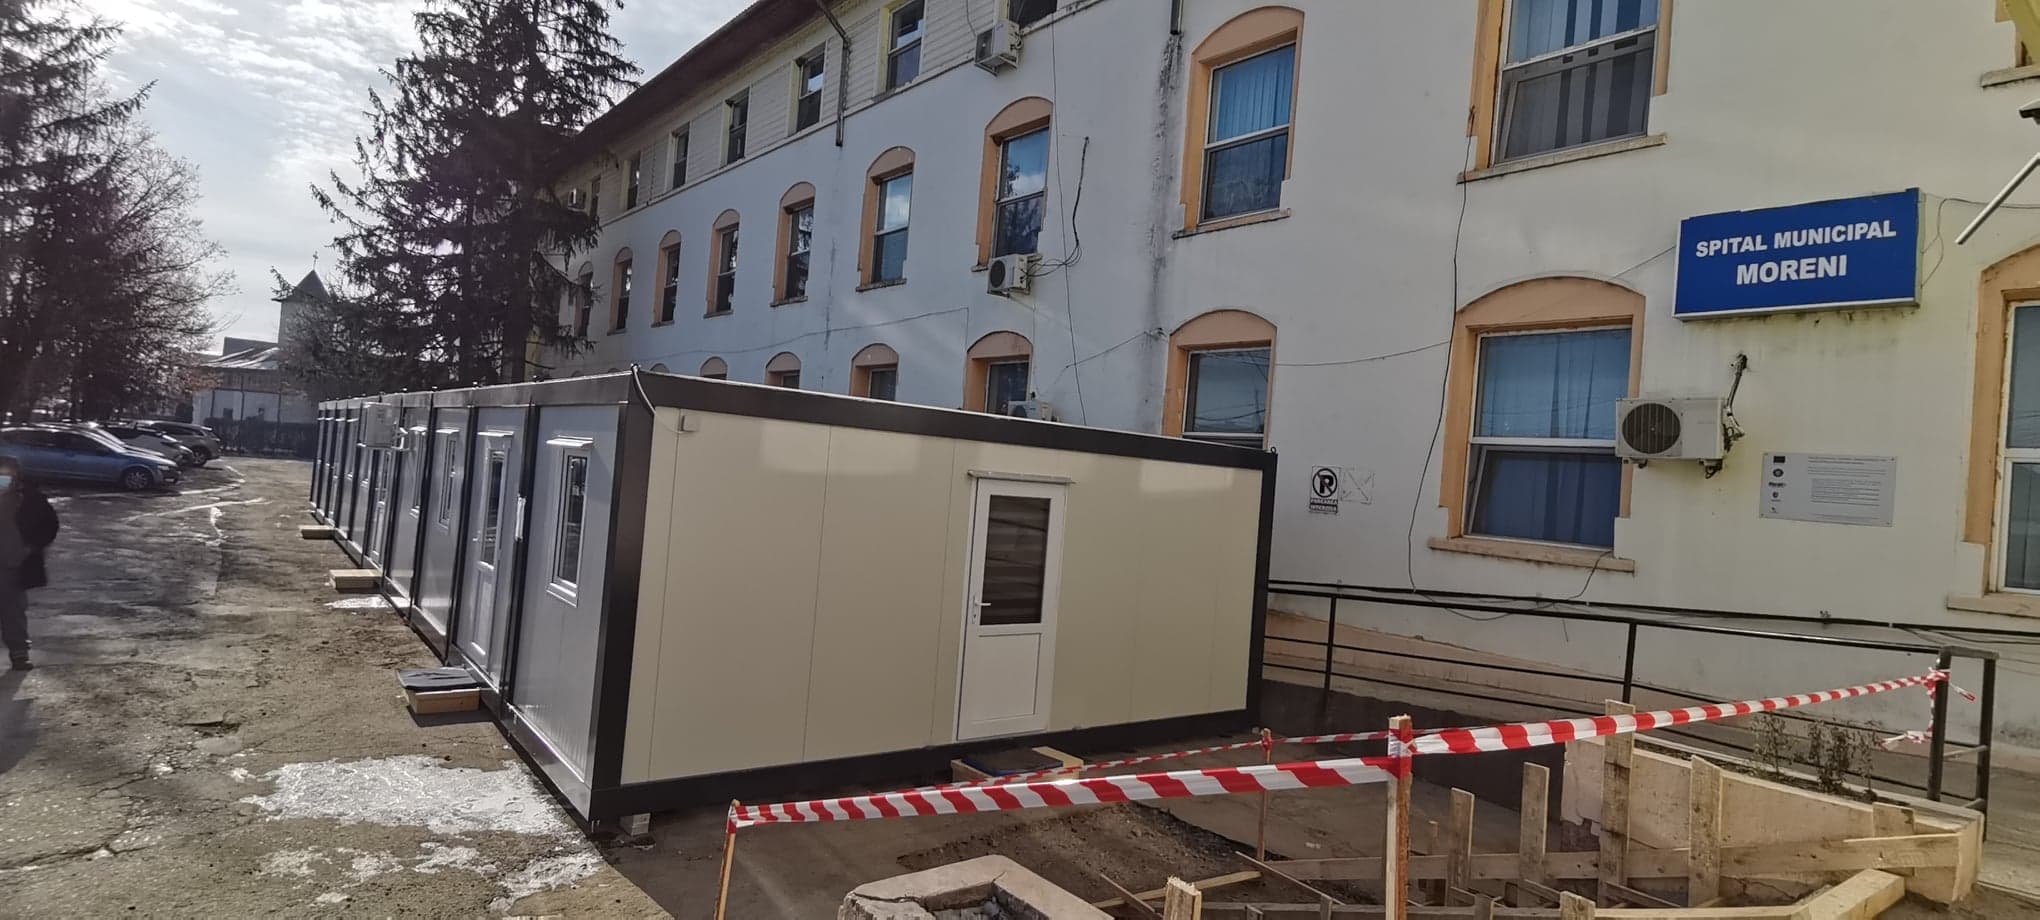 Consiliul Județean Dâmbovița a dotat și Spitalul Municipal Moreni cu un container special pentru pacienții suspecții de Covid-19